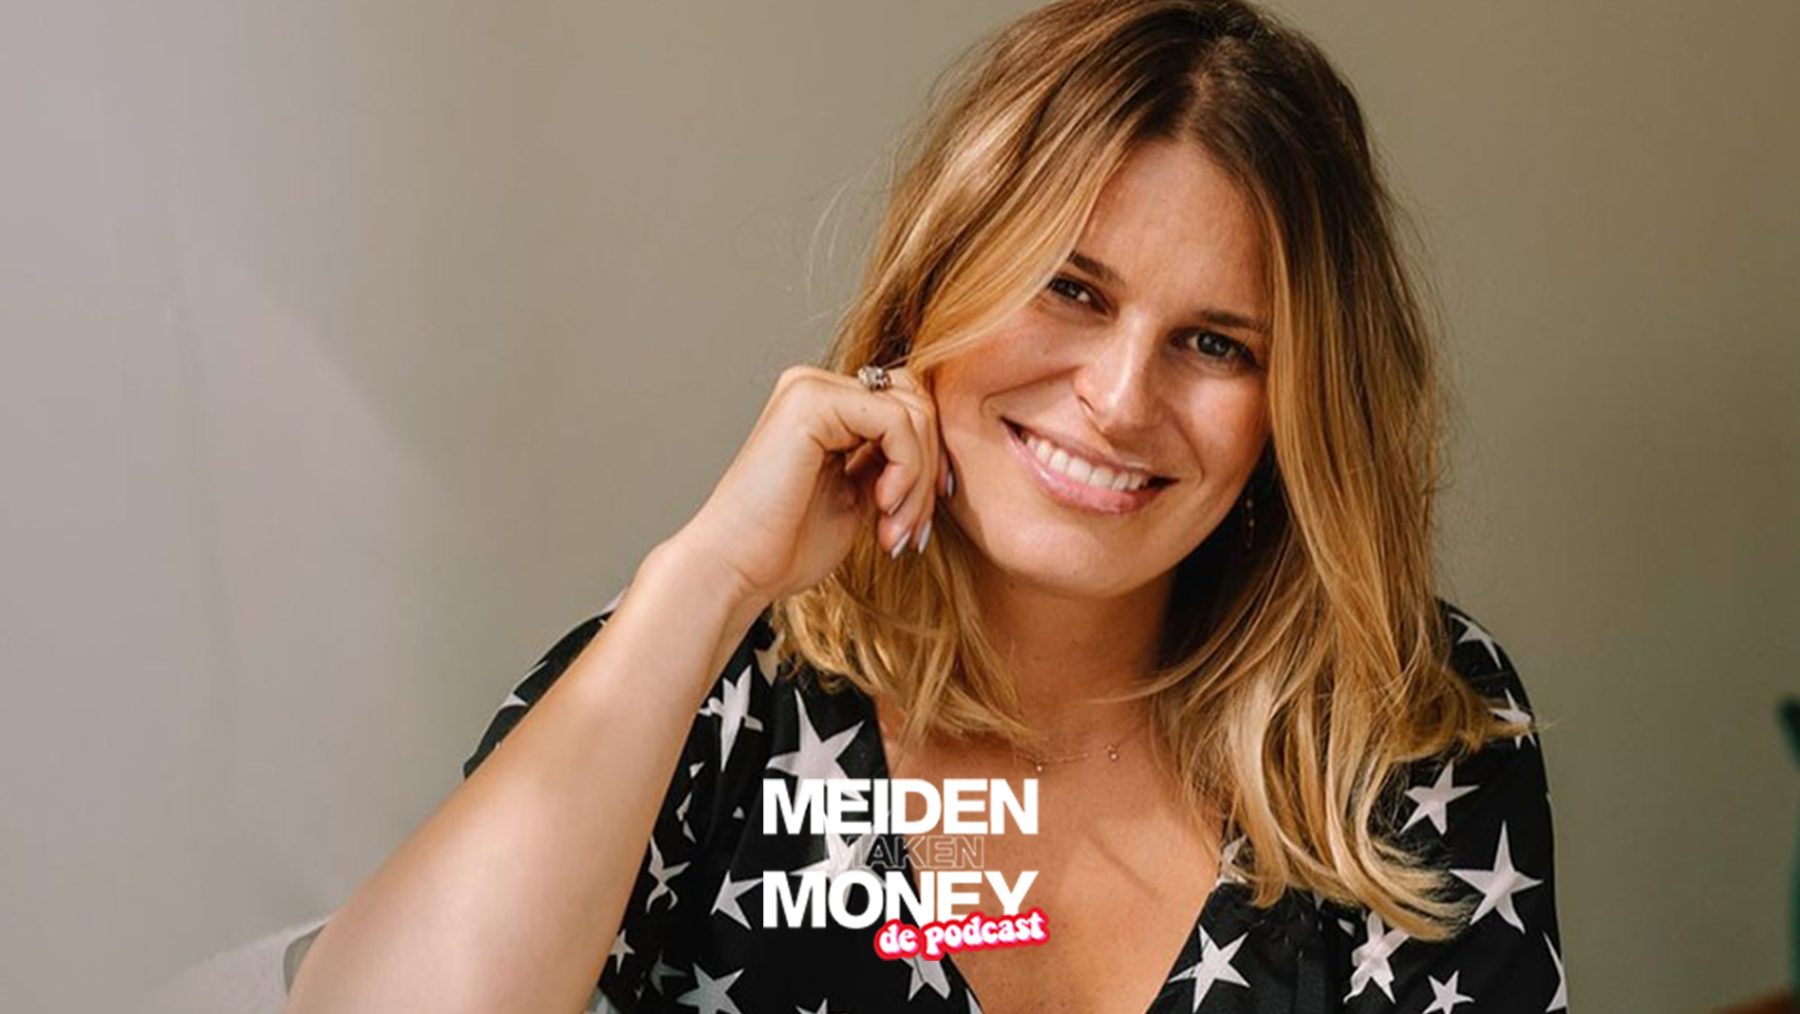 Meiden Maken Money de Podcast ondernemen